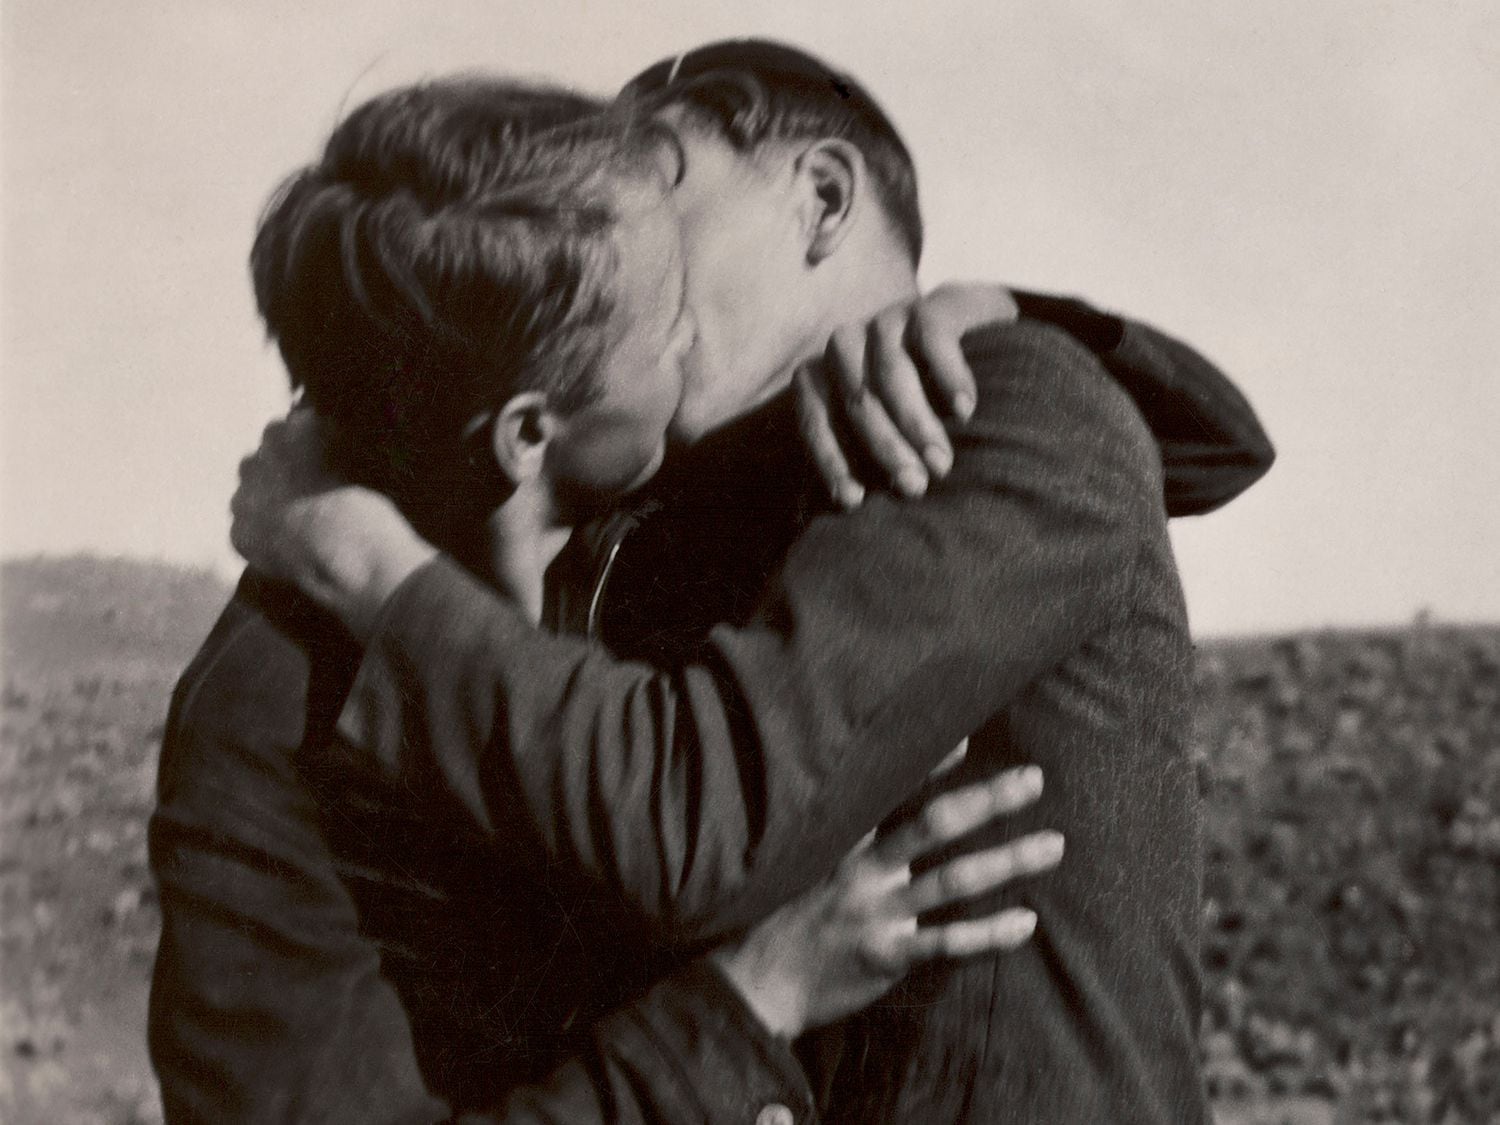 Detalle de una instantánea que muestra una pareja besándose.